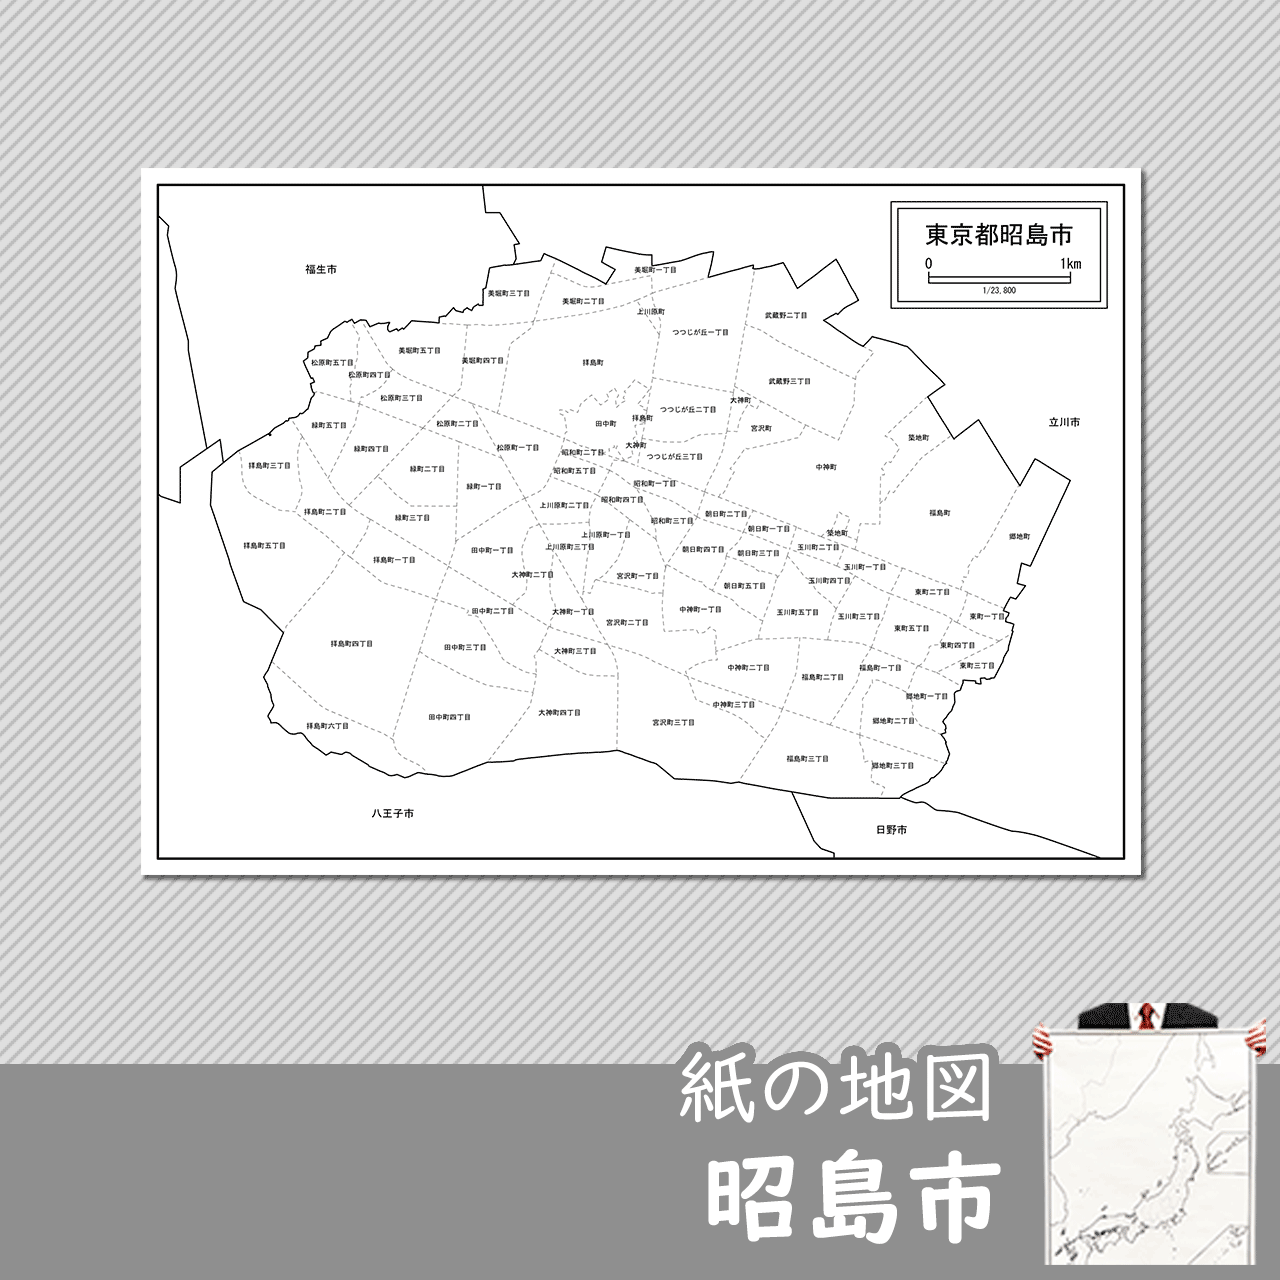 昭島市の白地図